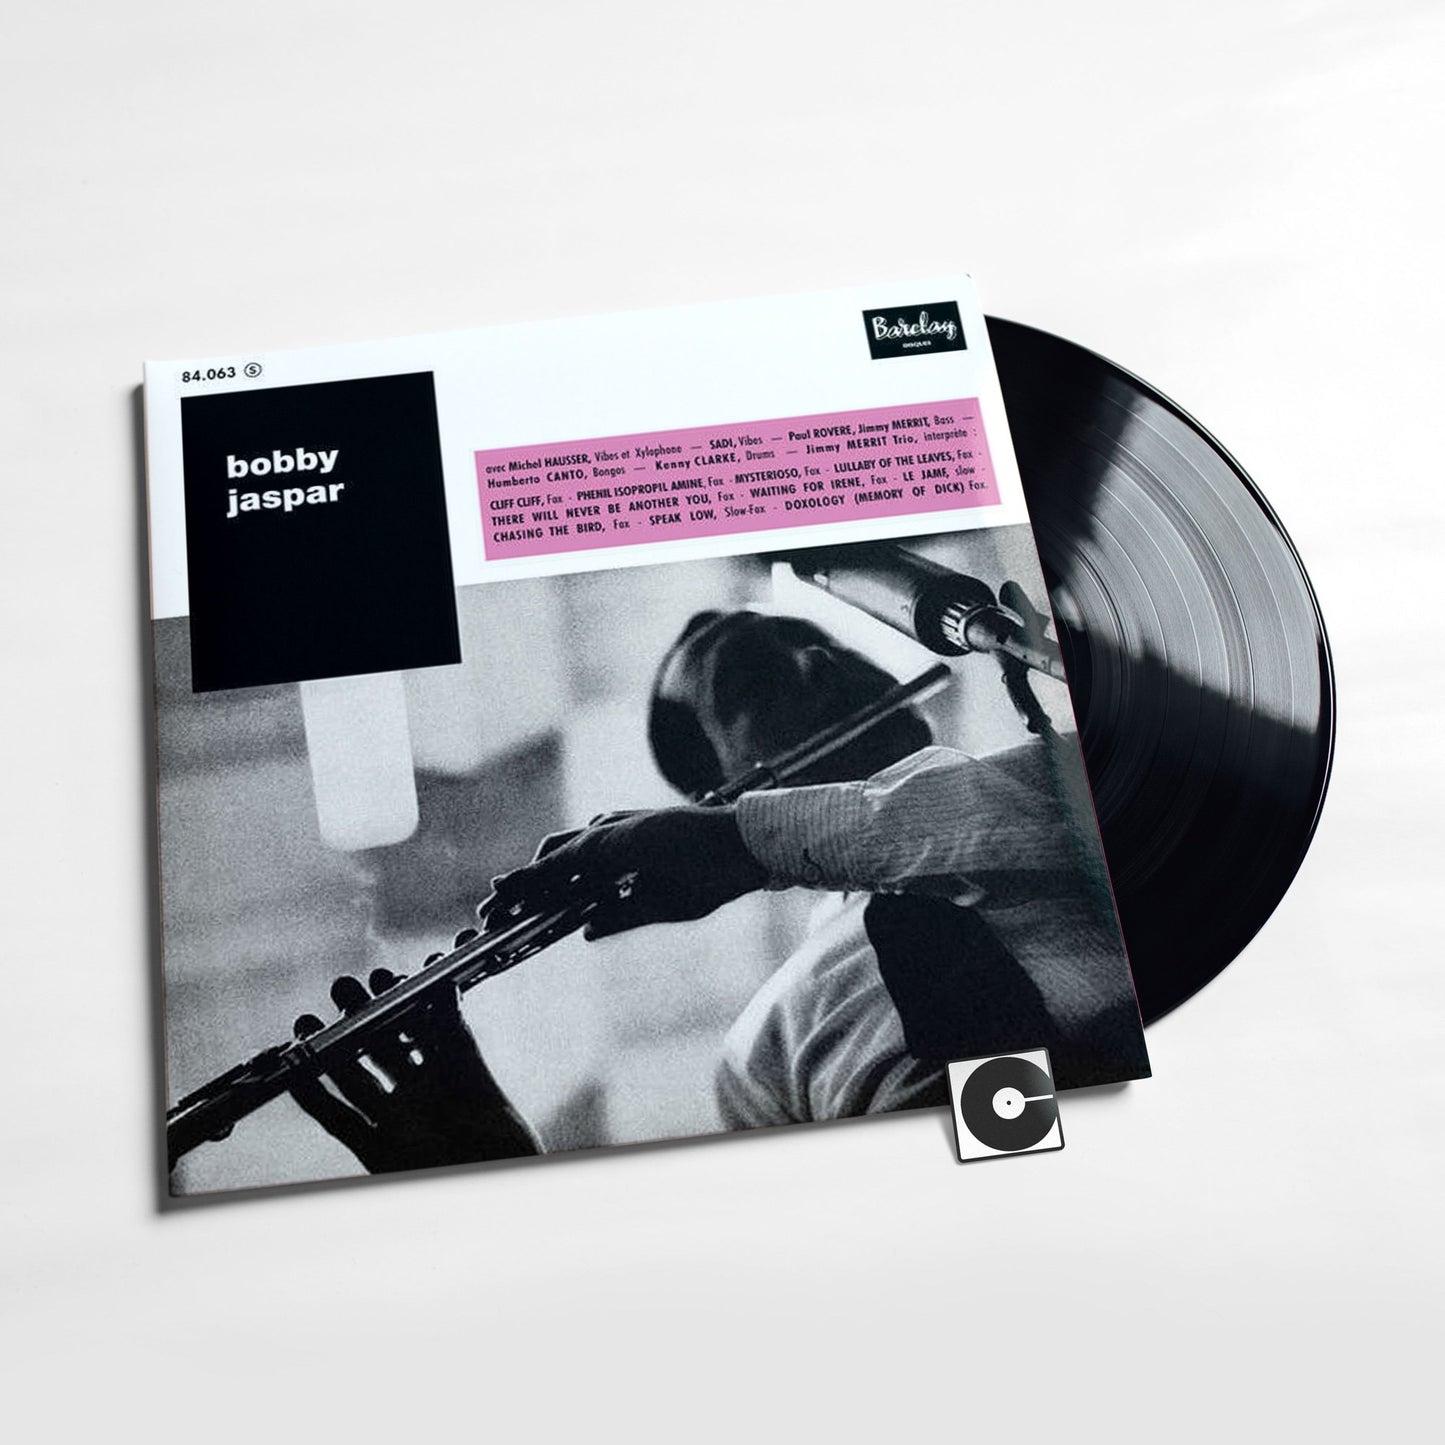 Bobby Jaspar - "Bobby Jaspar" Sam Records